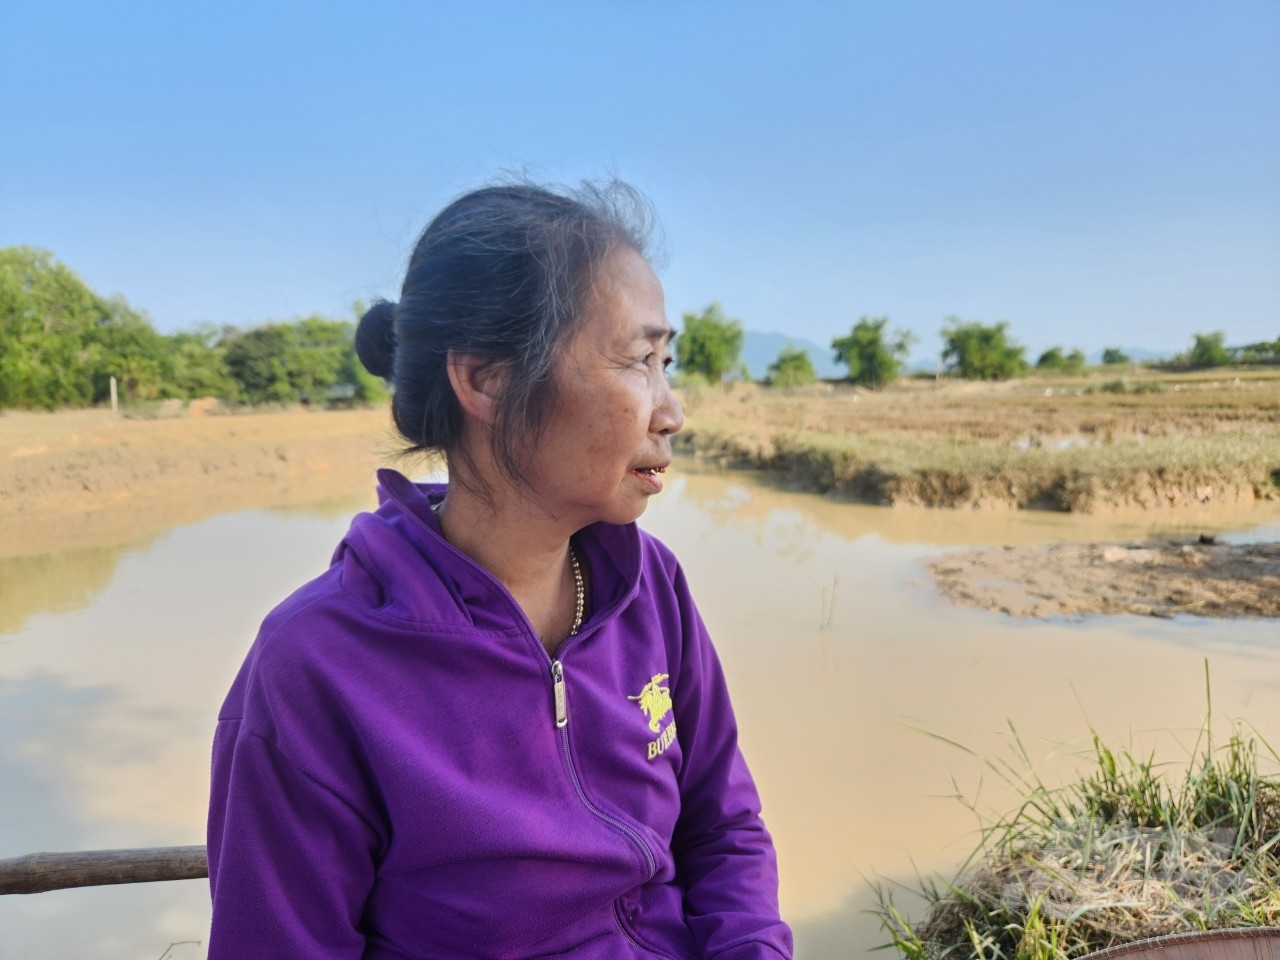 Bà Nguyễn Thị Hồng, thôn Đông Thành, xã Hợp Lý có 4 sào ruộng bị ngập nước do mưa lớn. Ảnh: Quốc Toản.